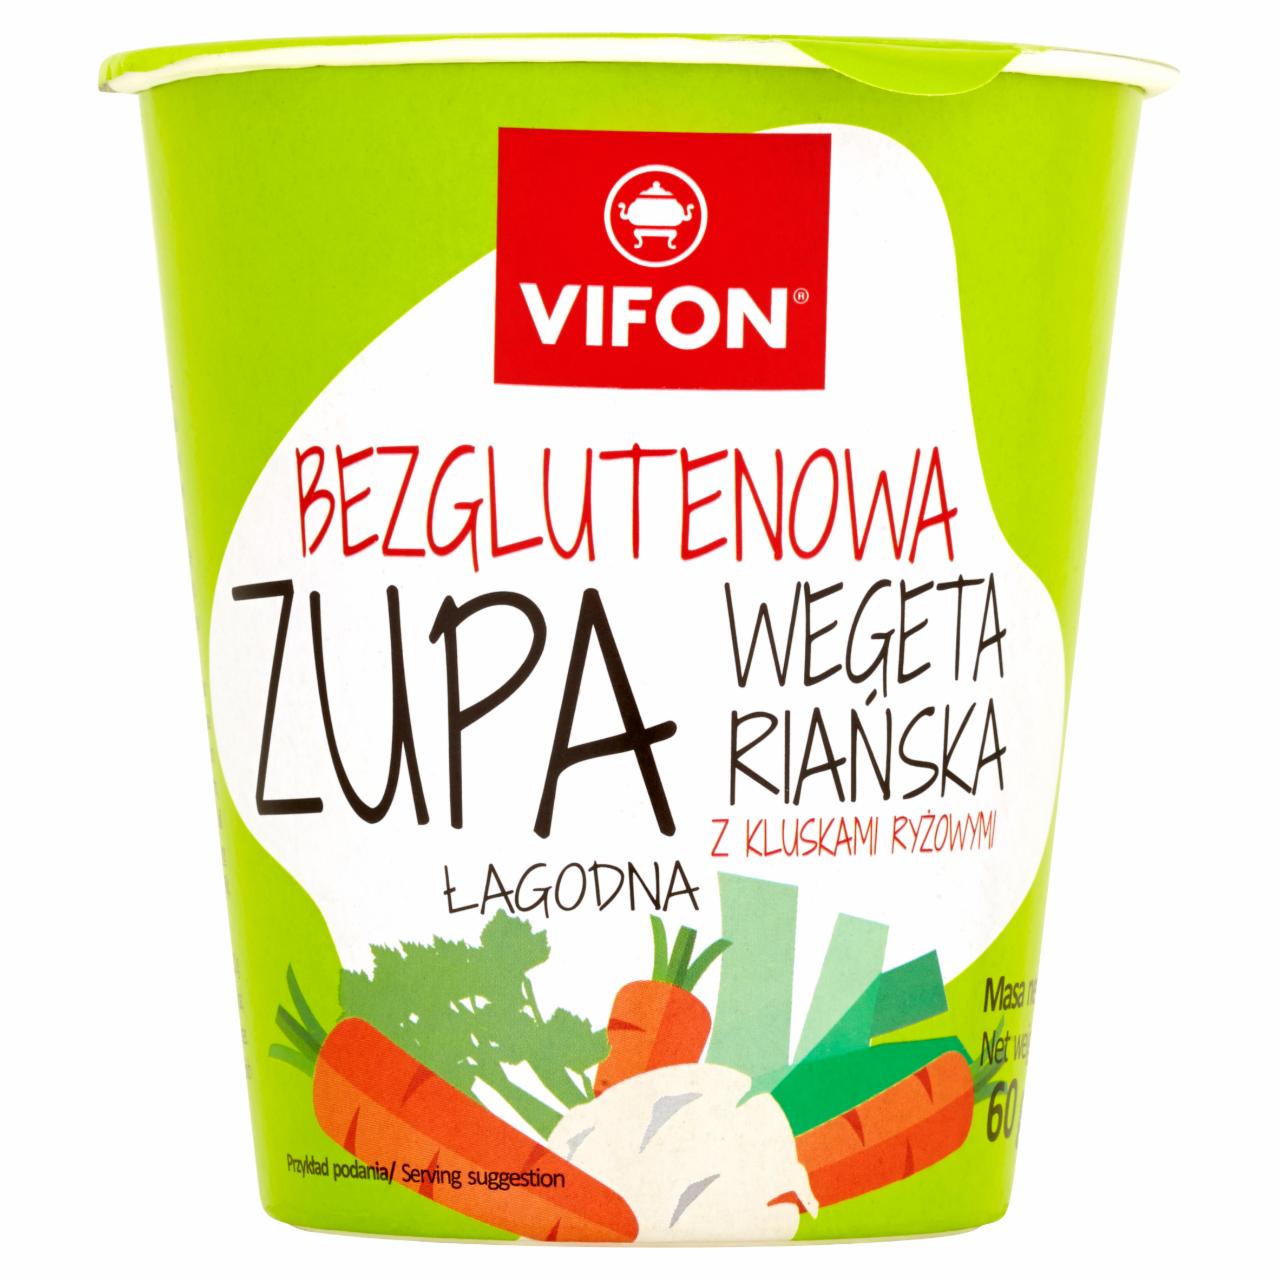 Zdjęcia - Vifon Bezglutenowa zupa wegetariańska z kluskami ryżowymi łagodna 60 g